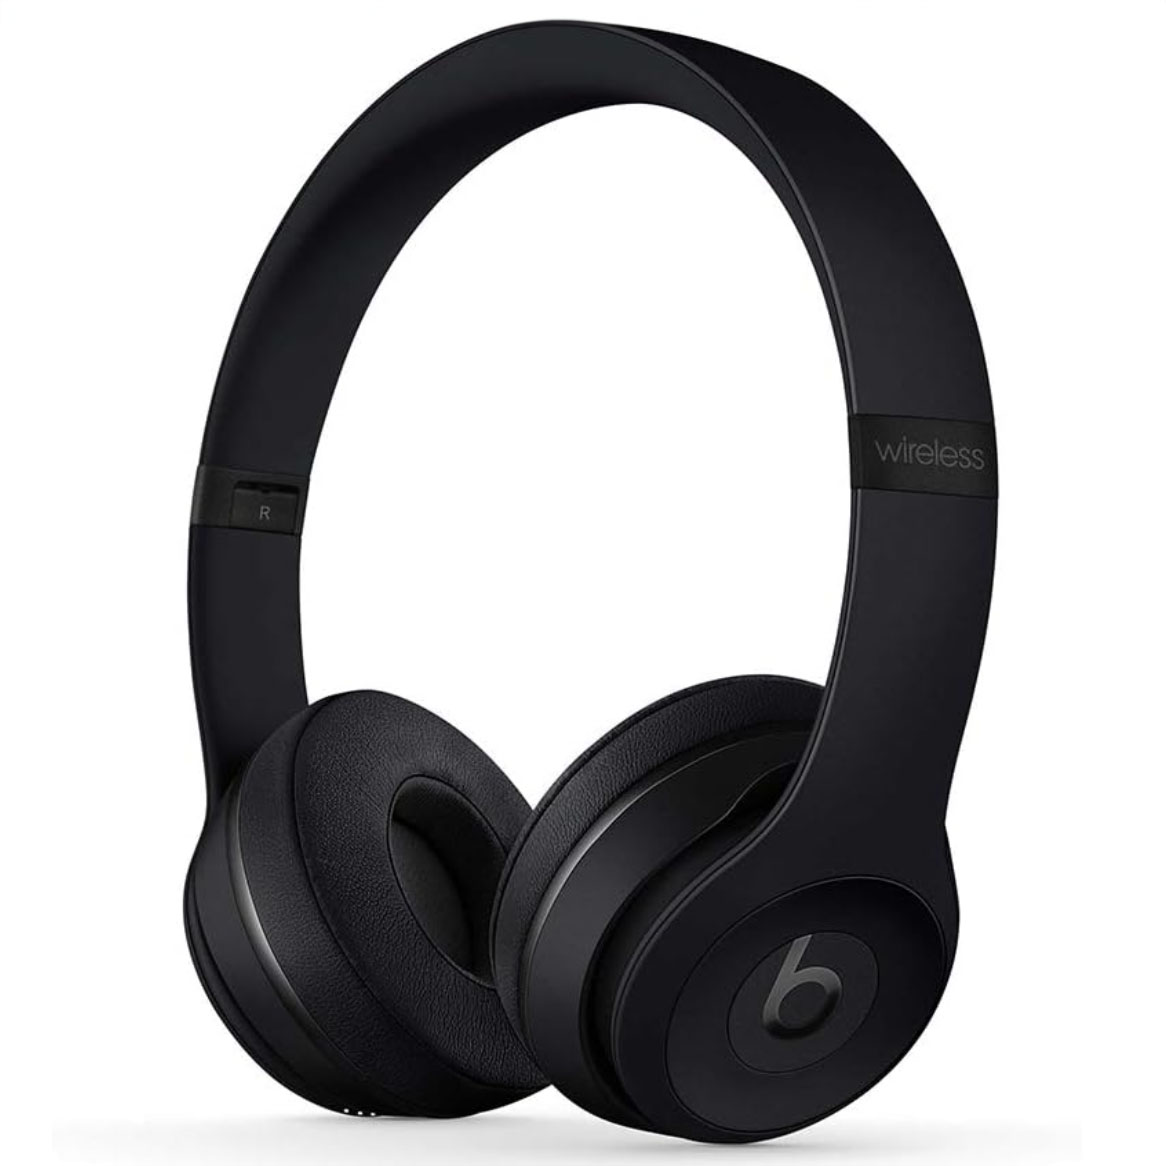 Beats headphones in black